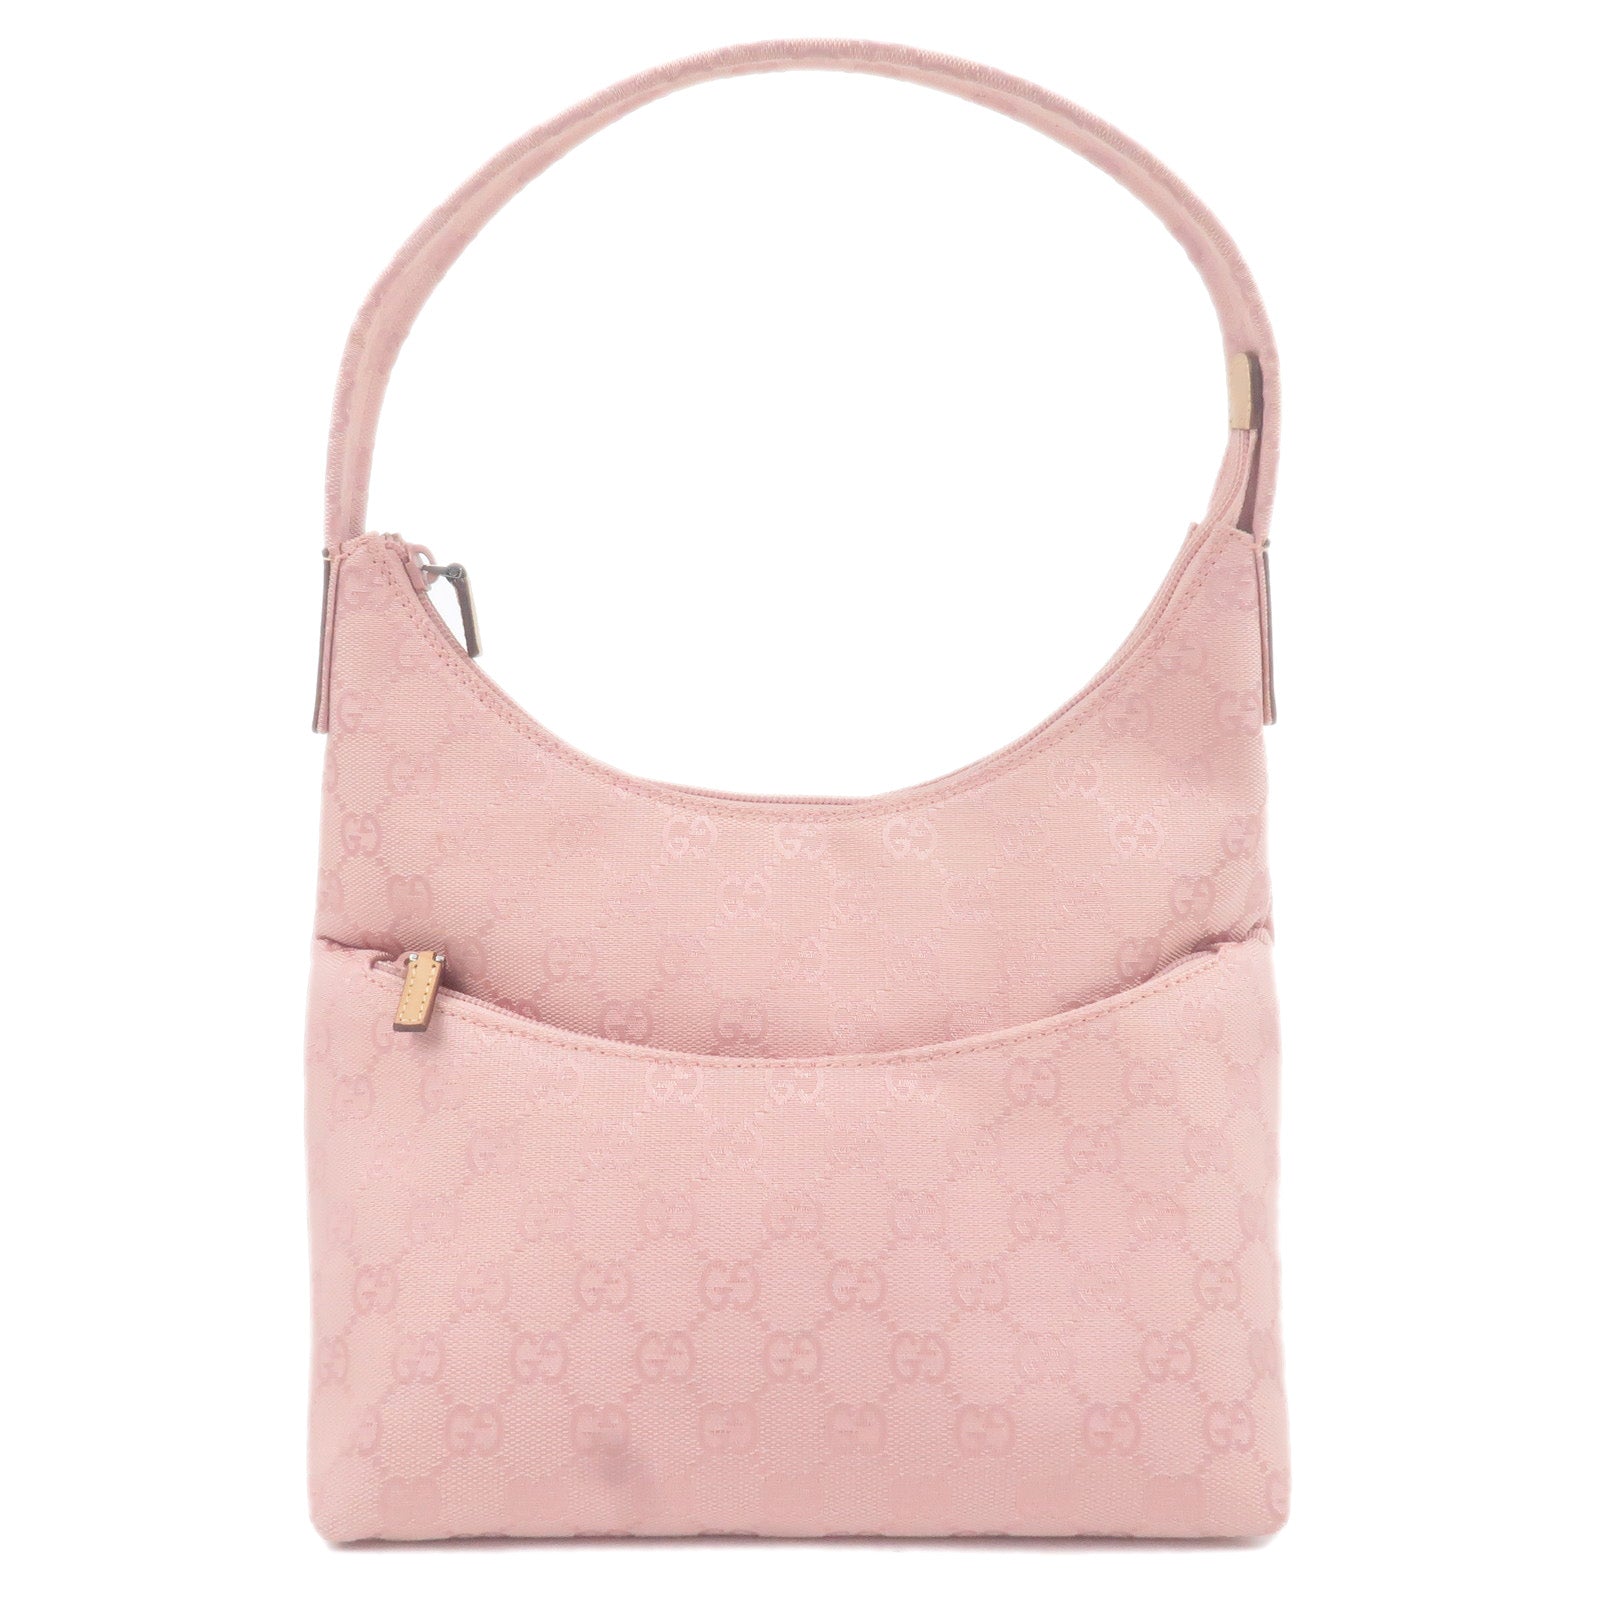 GUCCI-GG-Canvas-Leather-Shoulder-Bag-Pink-Beige-001.3386